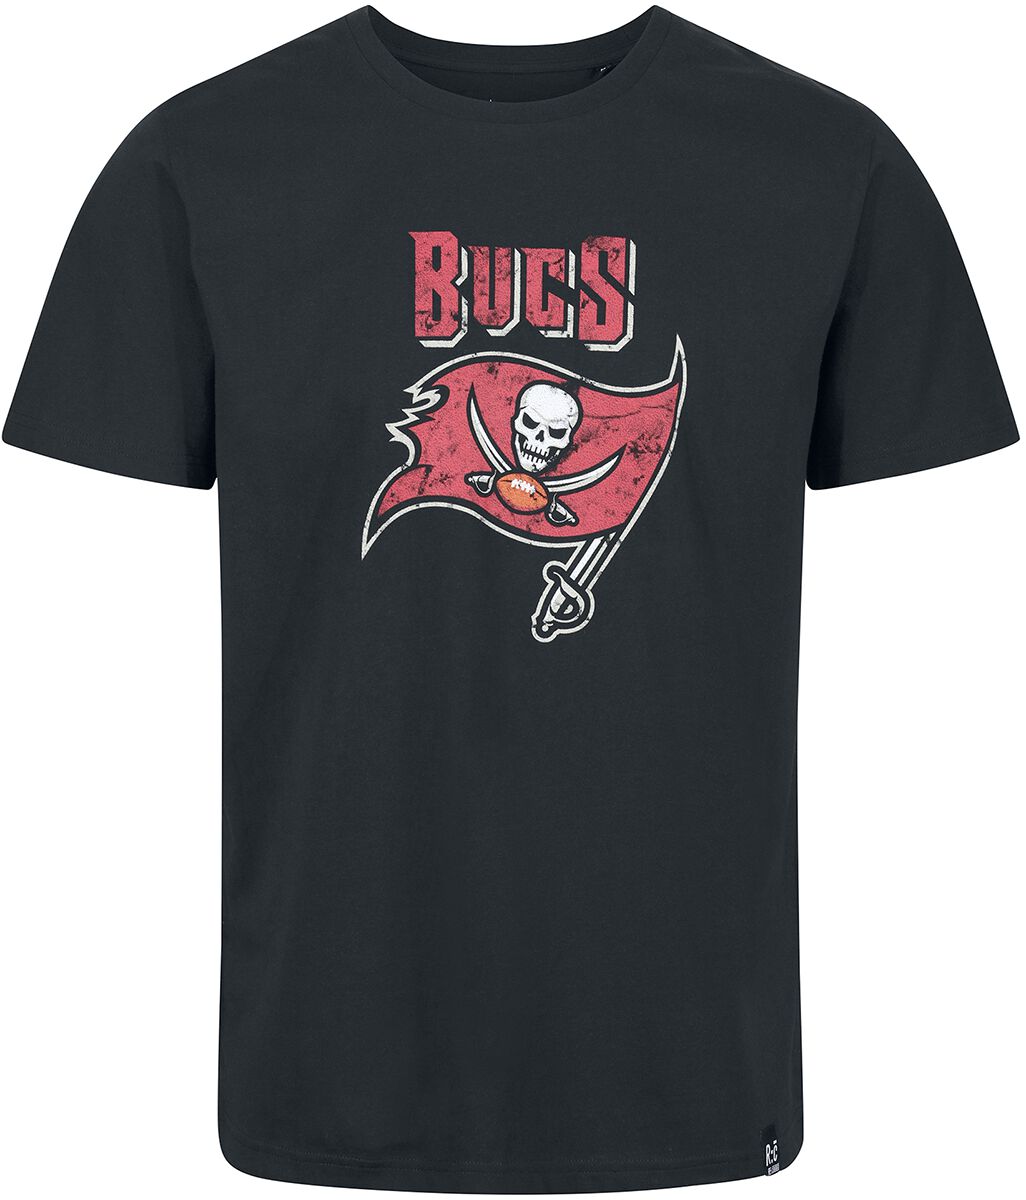 Recovered Clothing T-Shirt - NFL Buccs Logo - S bis XXL - für Männer - Größe XL - schwarz